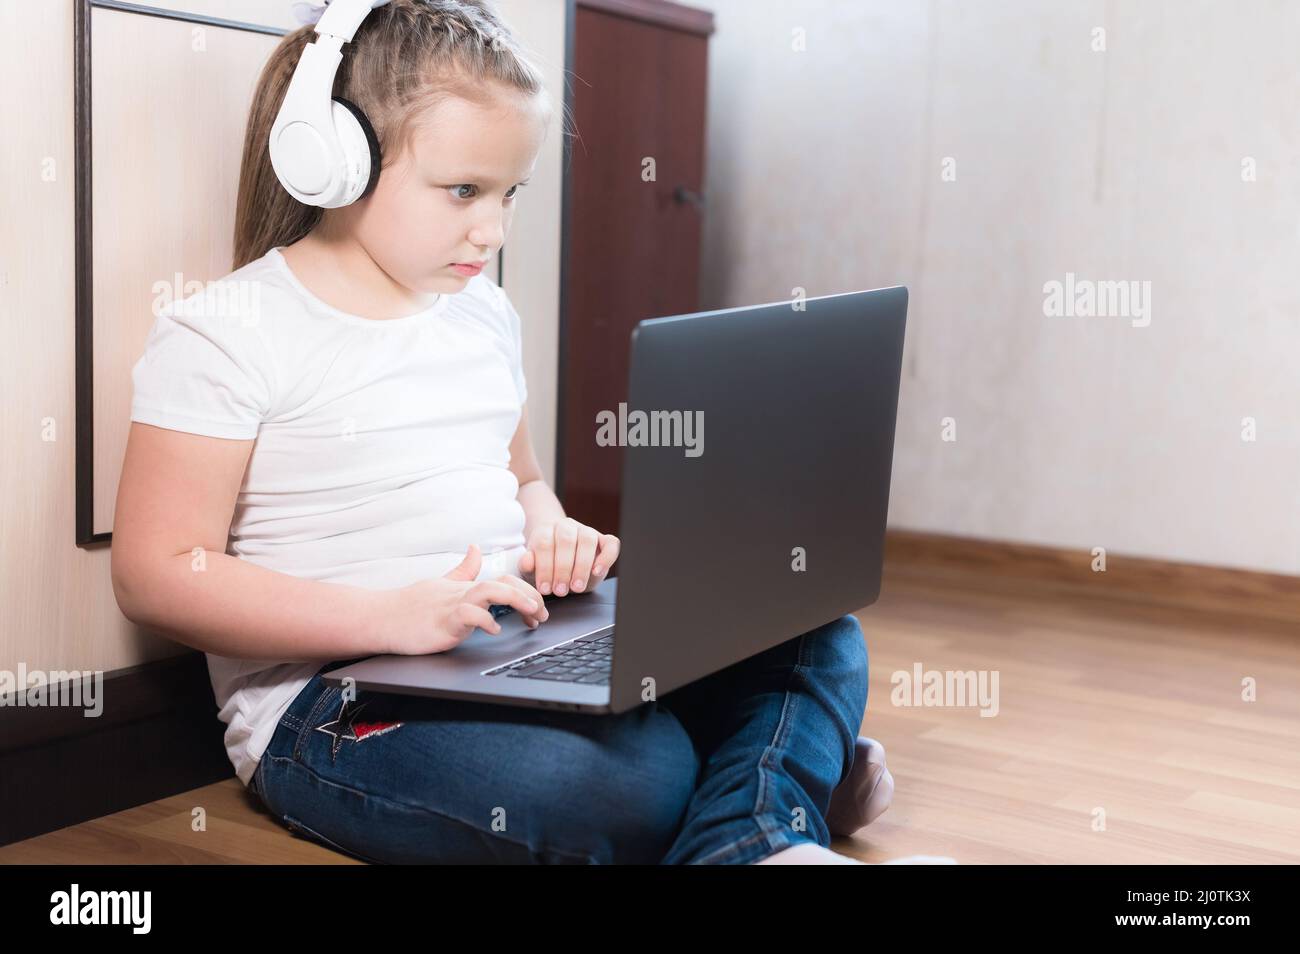 Ein junges kaukasisches Mädchen in einem weißen T-Shirt, Kopfhörern und Jeans sitzt auf dem Boden in einem Raum mit einem Laptop in den Armen. Ein Stockfoto